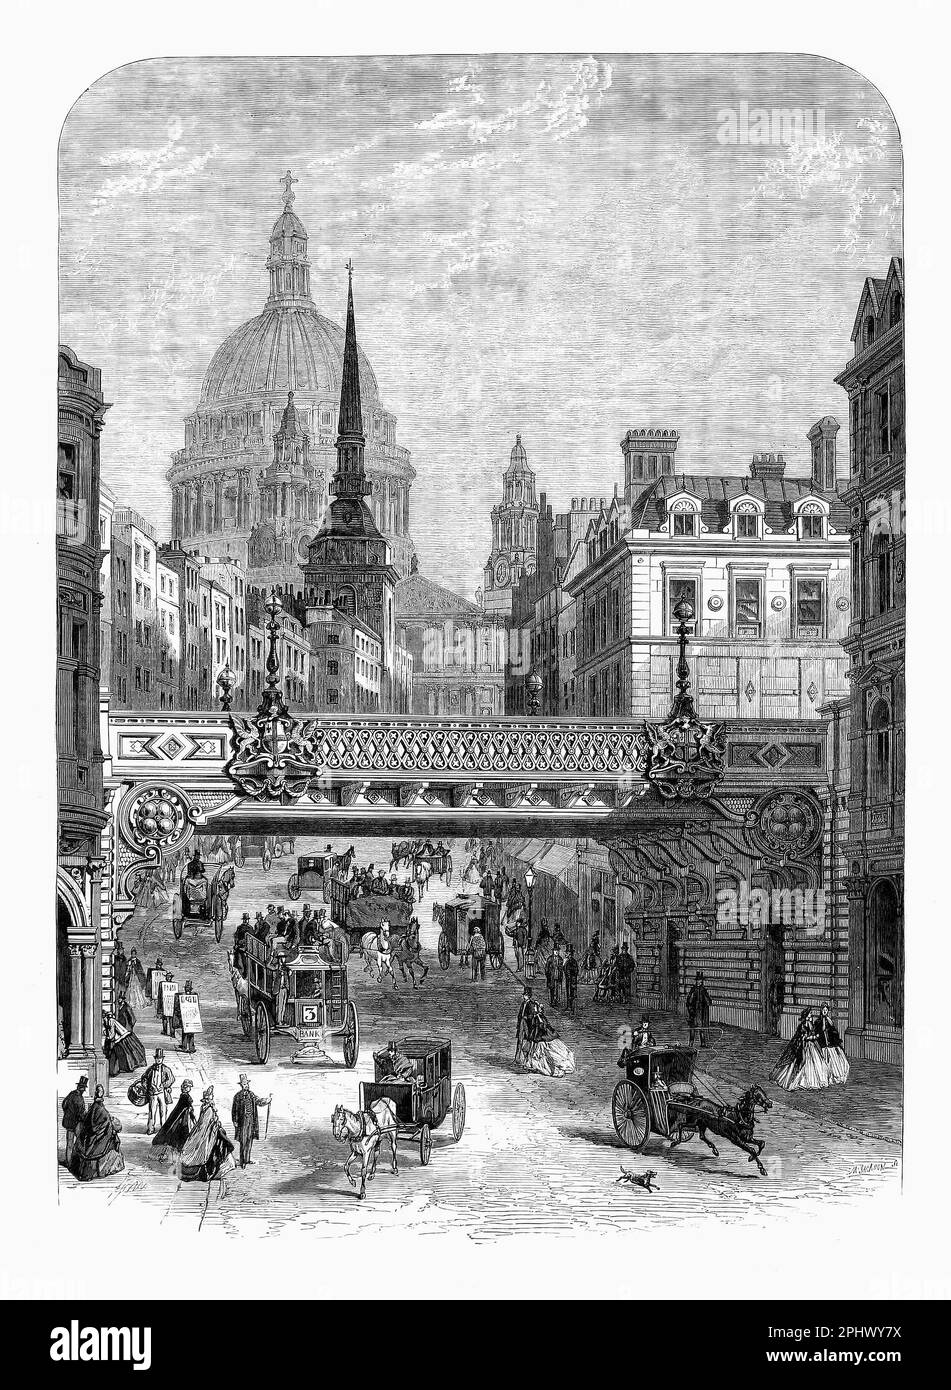 Una scena di strada gentile da 1865 del ponte ferroviario vittoriano ornato sopra Ludgate Hill nella città di Londra, Inghilterra. È stato costruito per essere utilizzato dalla London, Chatham e dover Railway Company Foto Stock